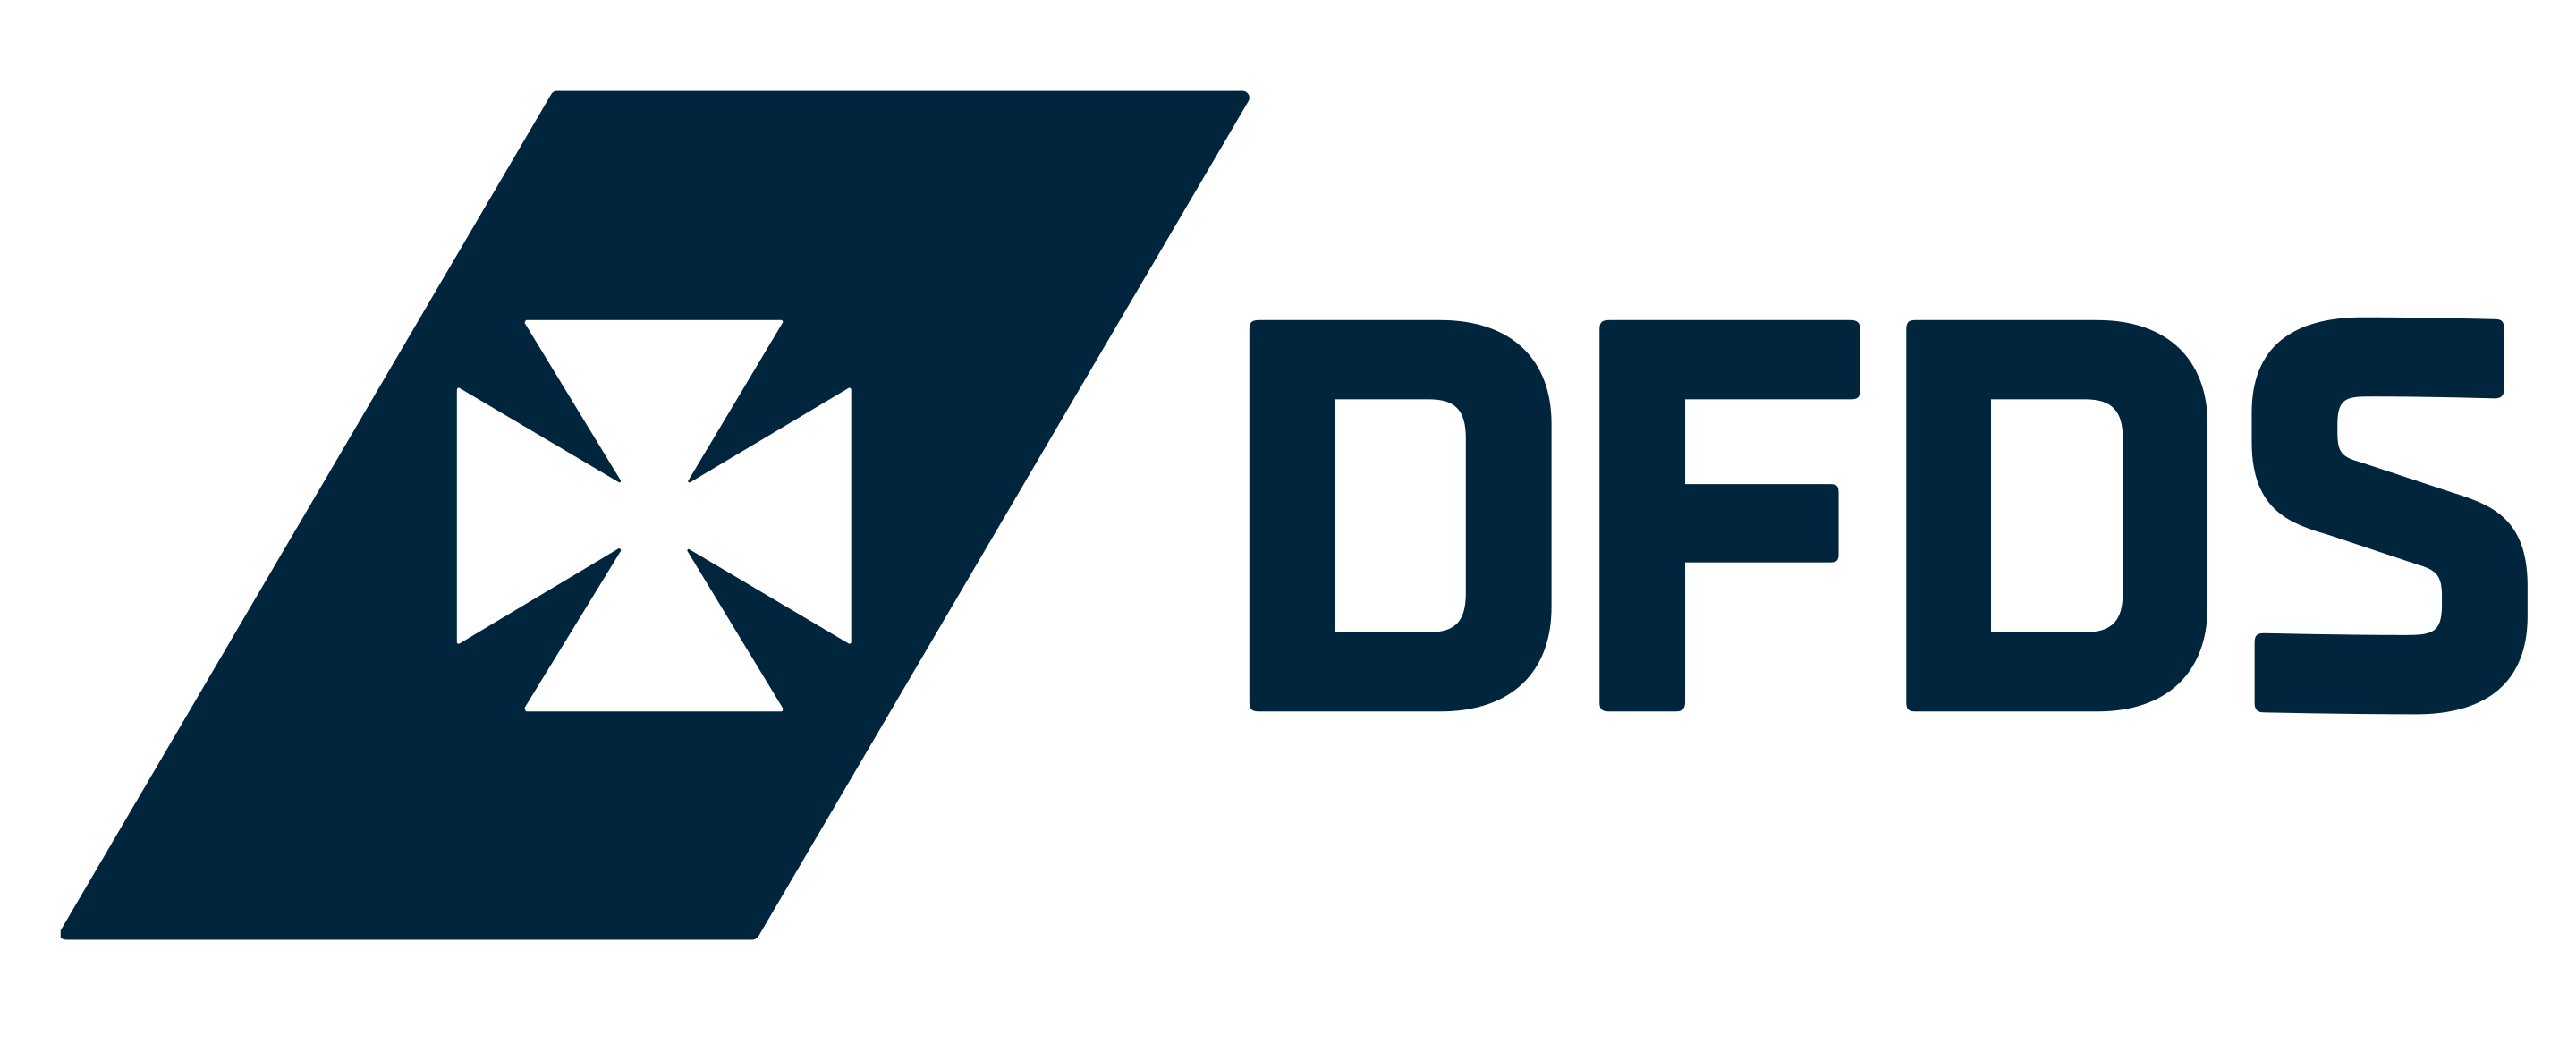 DFDS Seaways এর লোগো